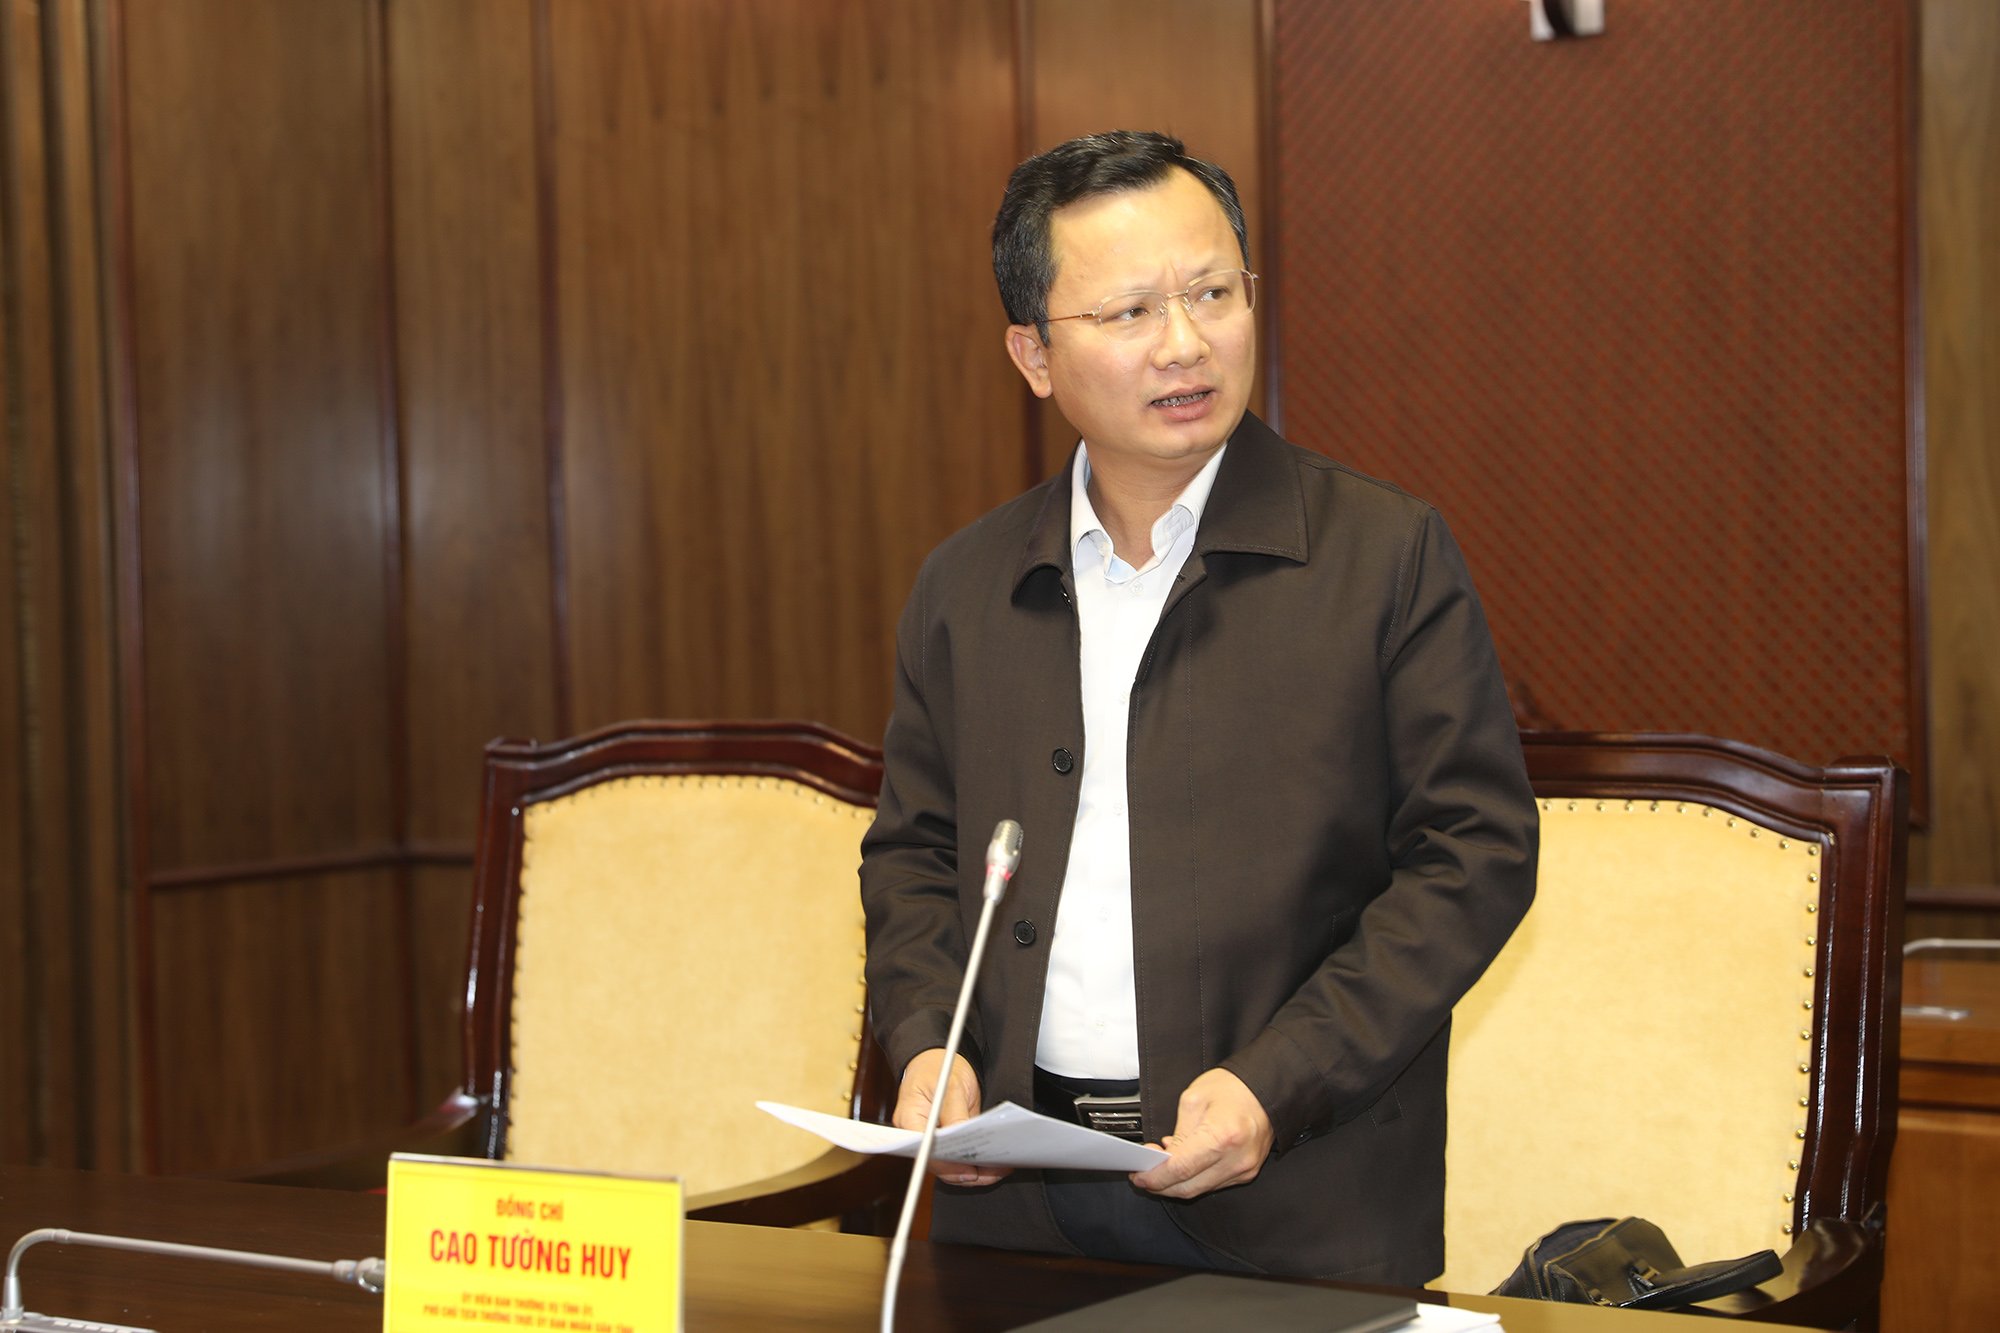 Đồng chí Cao Tường Huy, Phó Chủ tịch Thường trực UBND tỉnh báo cáo quy mô đầu tư dự án